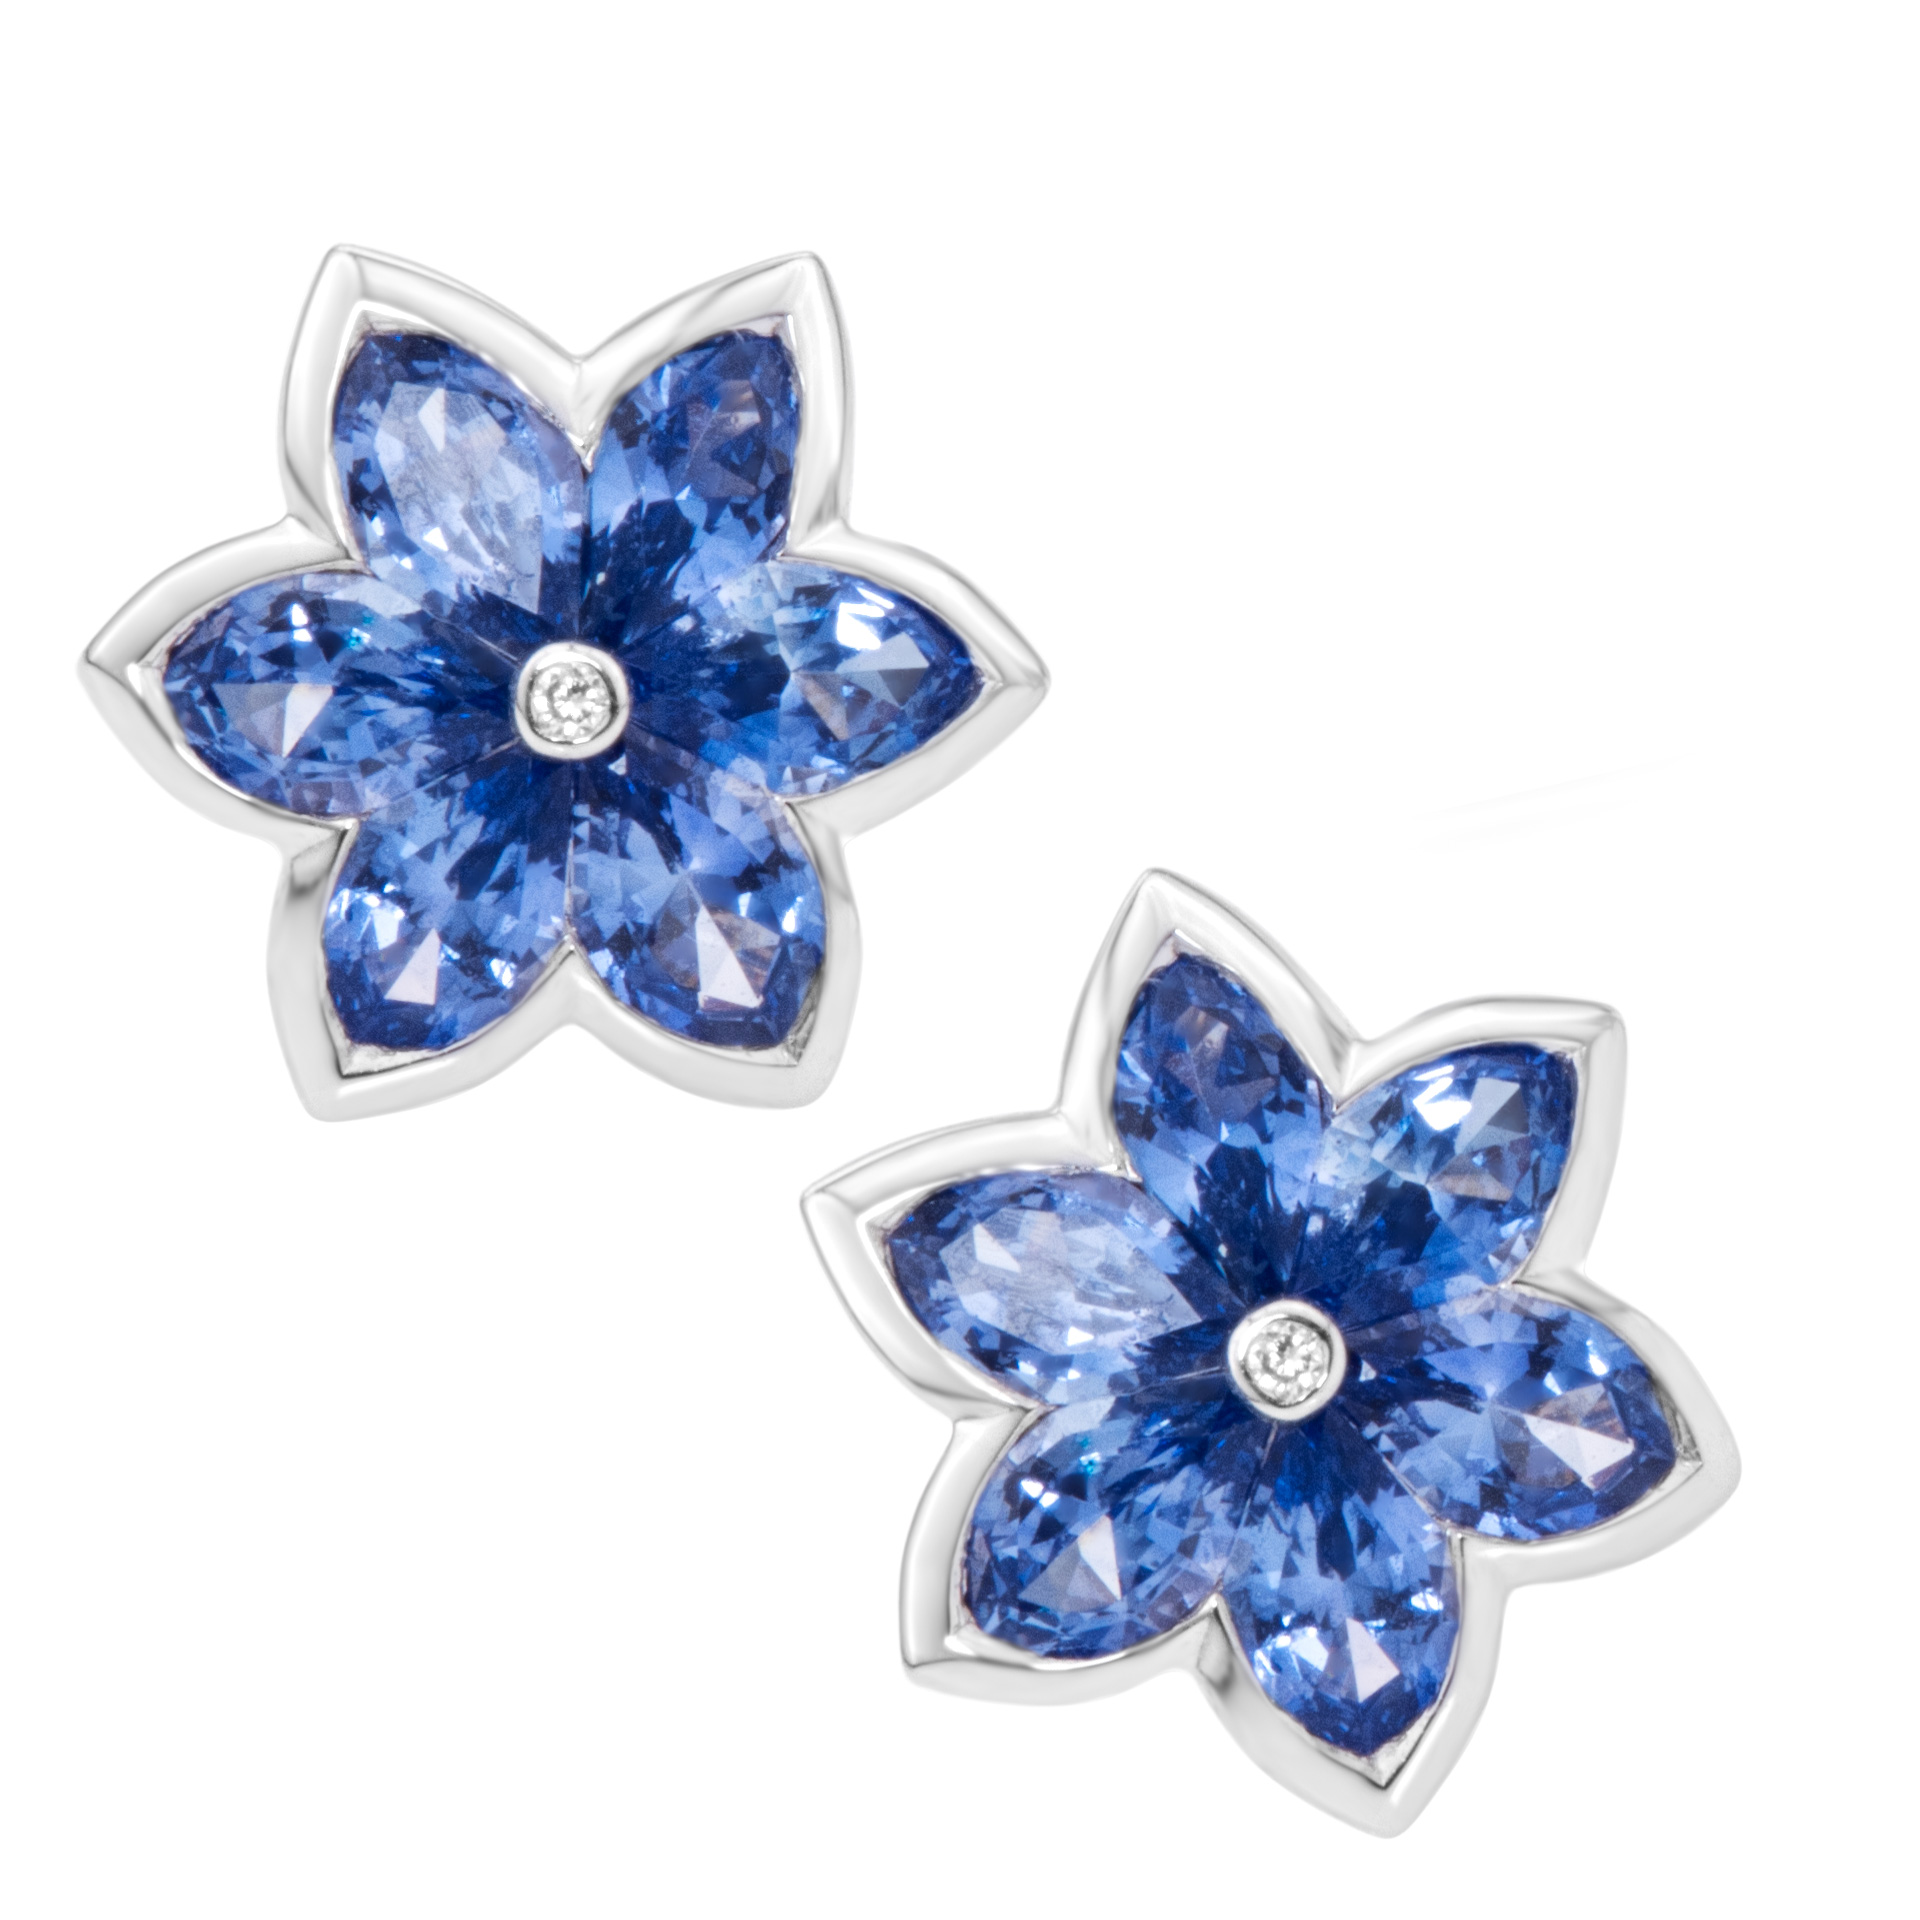 Blue sapphire star stud earrings